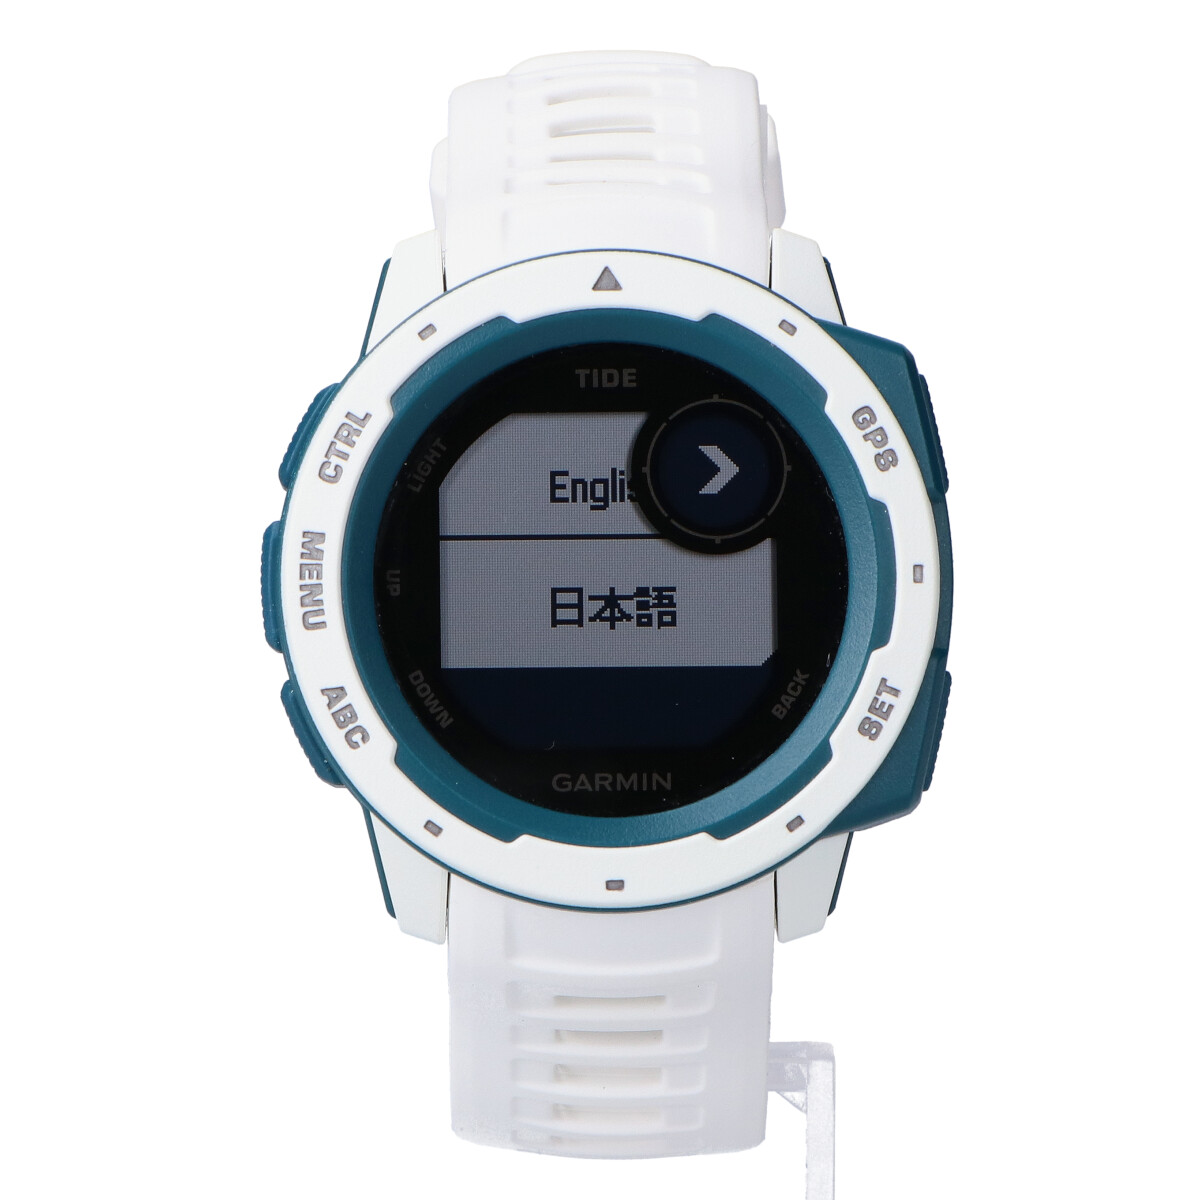 ガーミンのInstinct Tide GPS アウトドアスマートウォッチ腕時計 010-02064-A2の買取実績です。